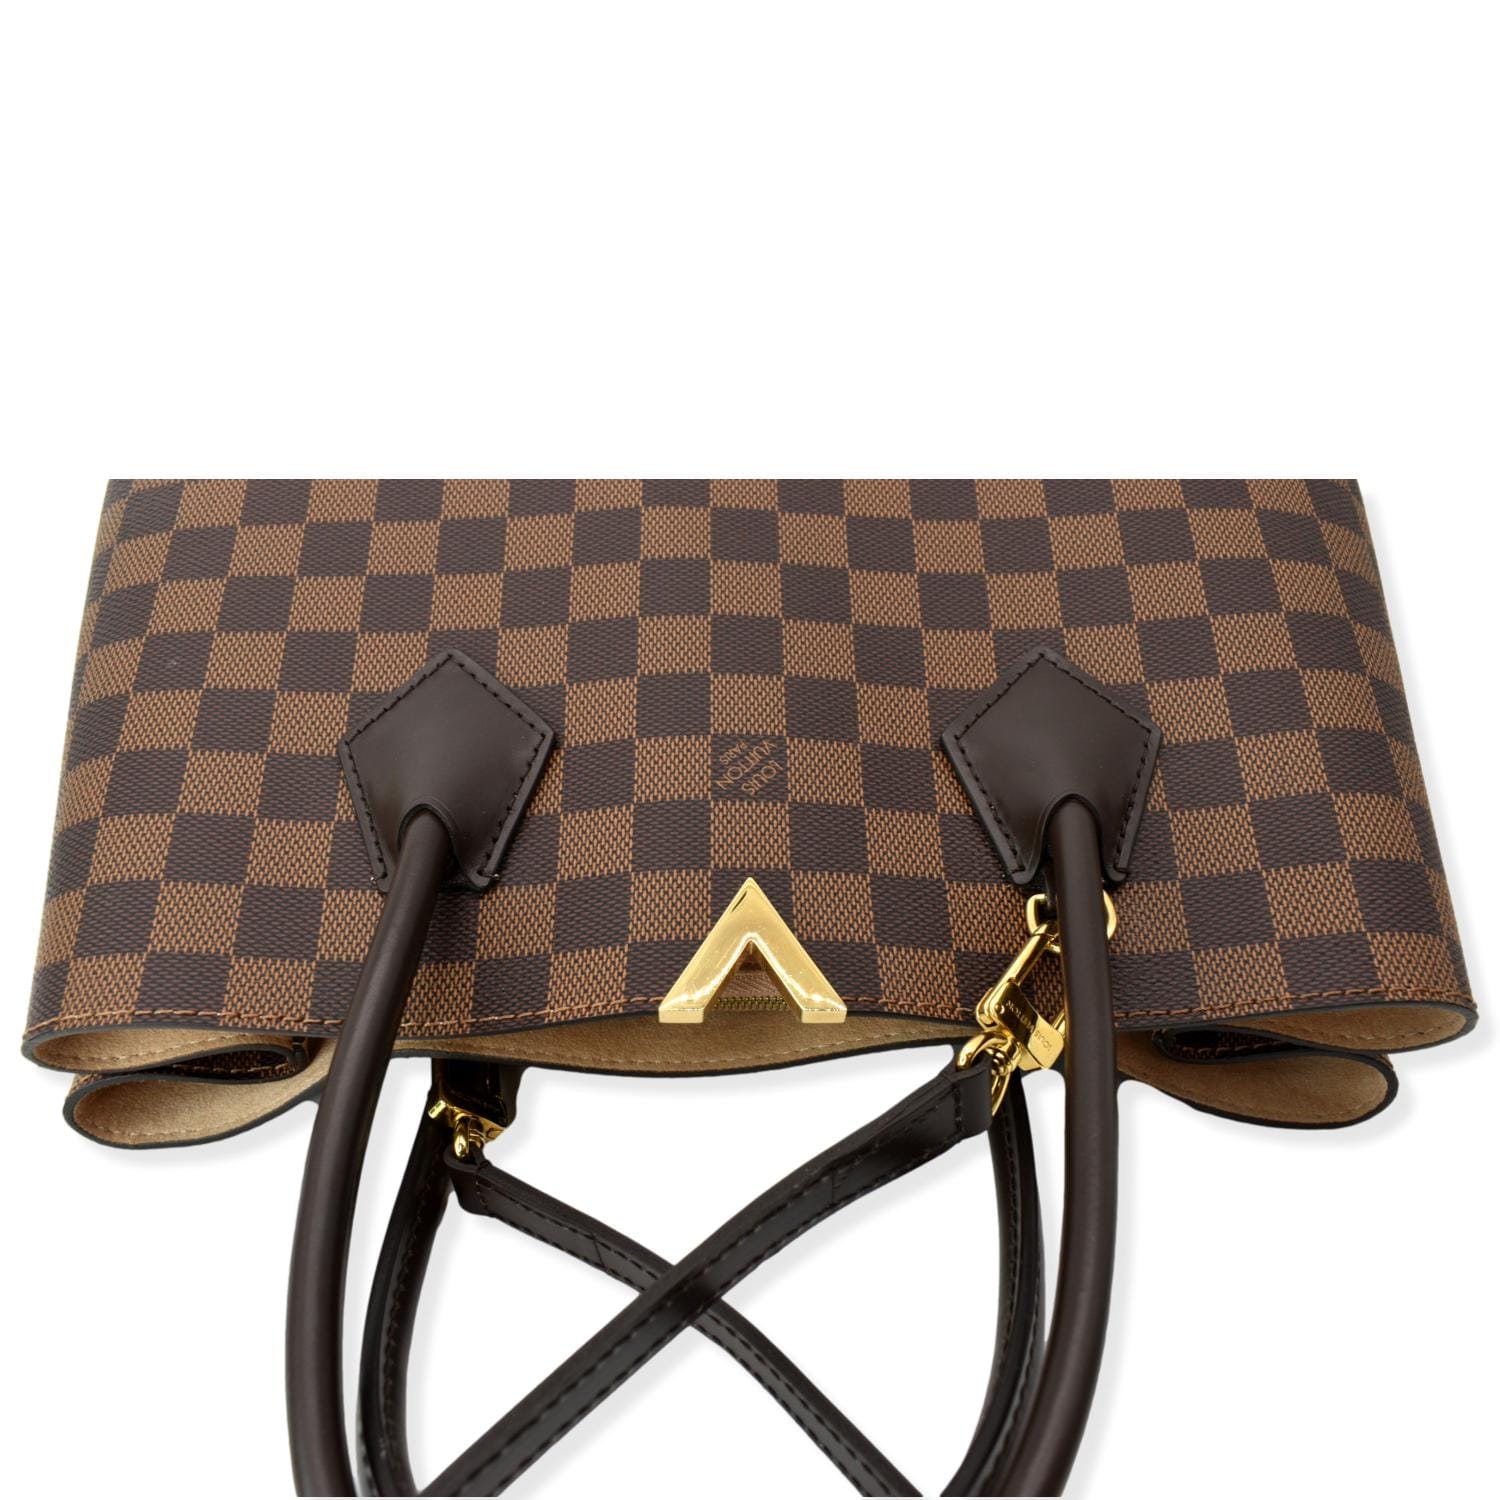 Authentic Louis Vuitton Damier Ebene Kensington Tote/Shoulder Bag – Paris  Station Shop